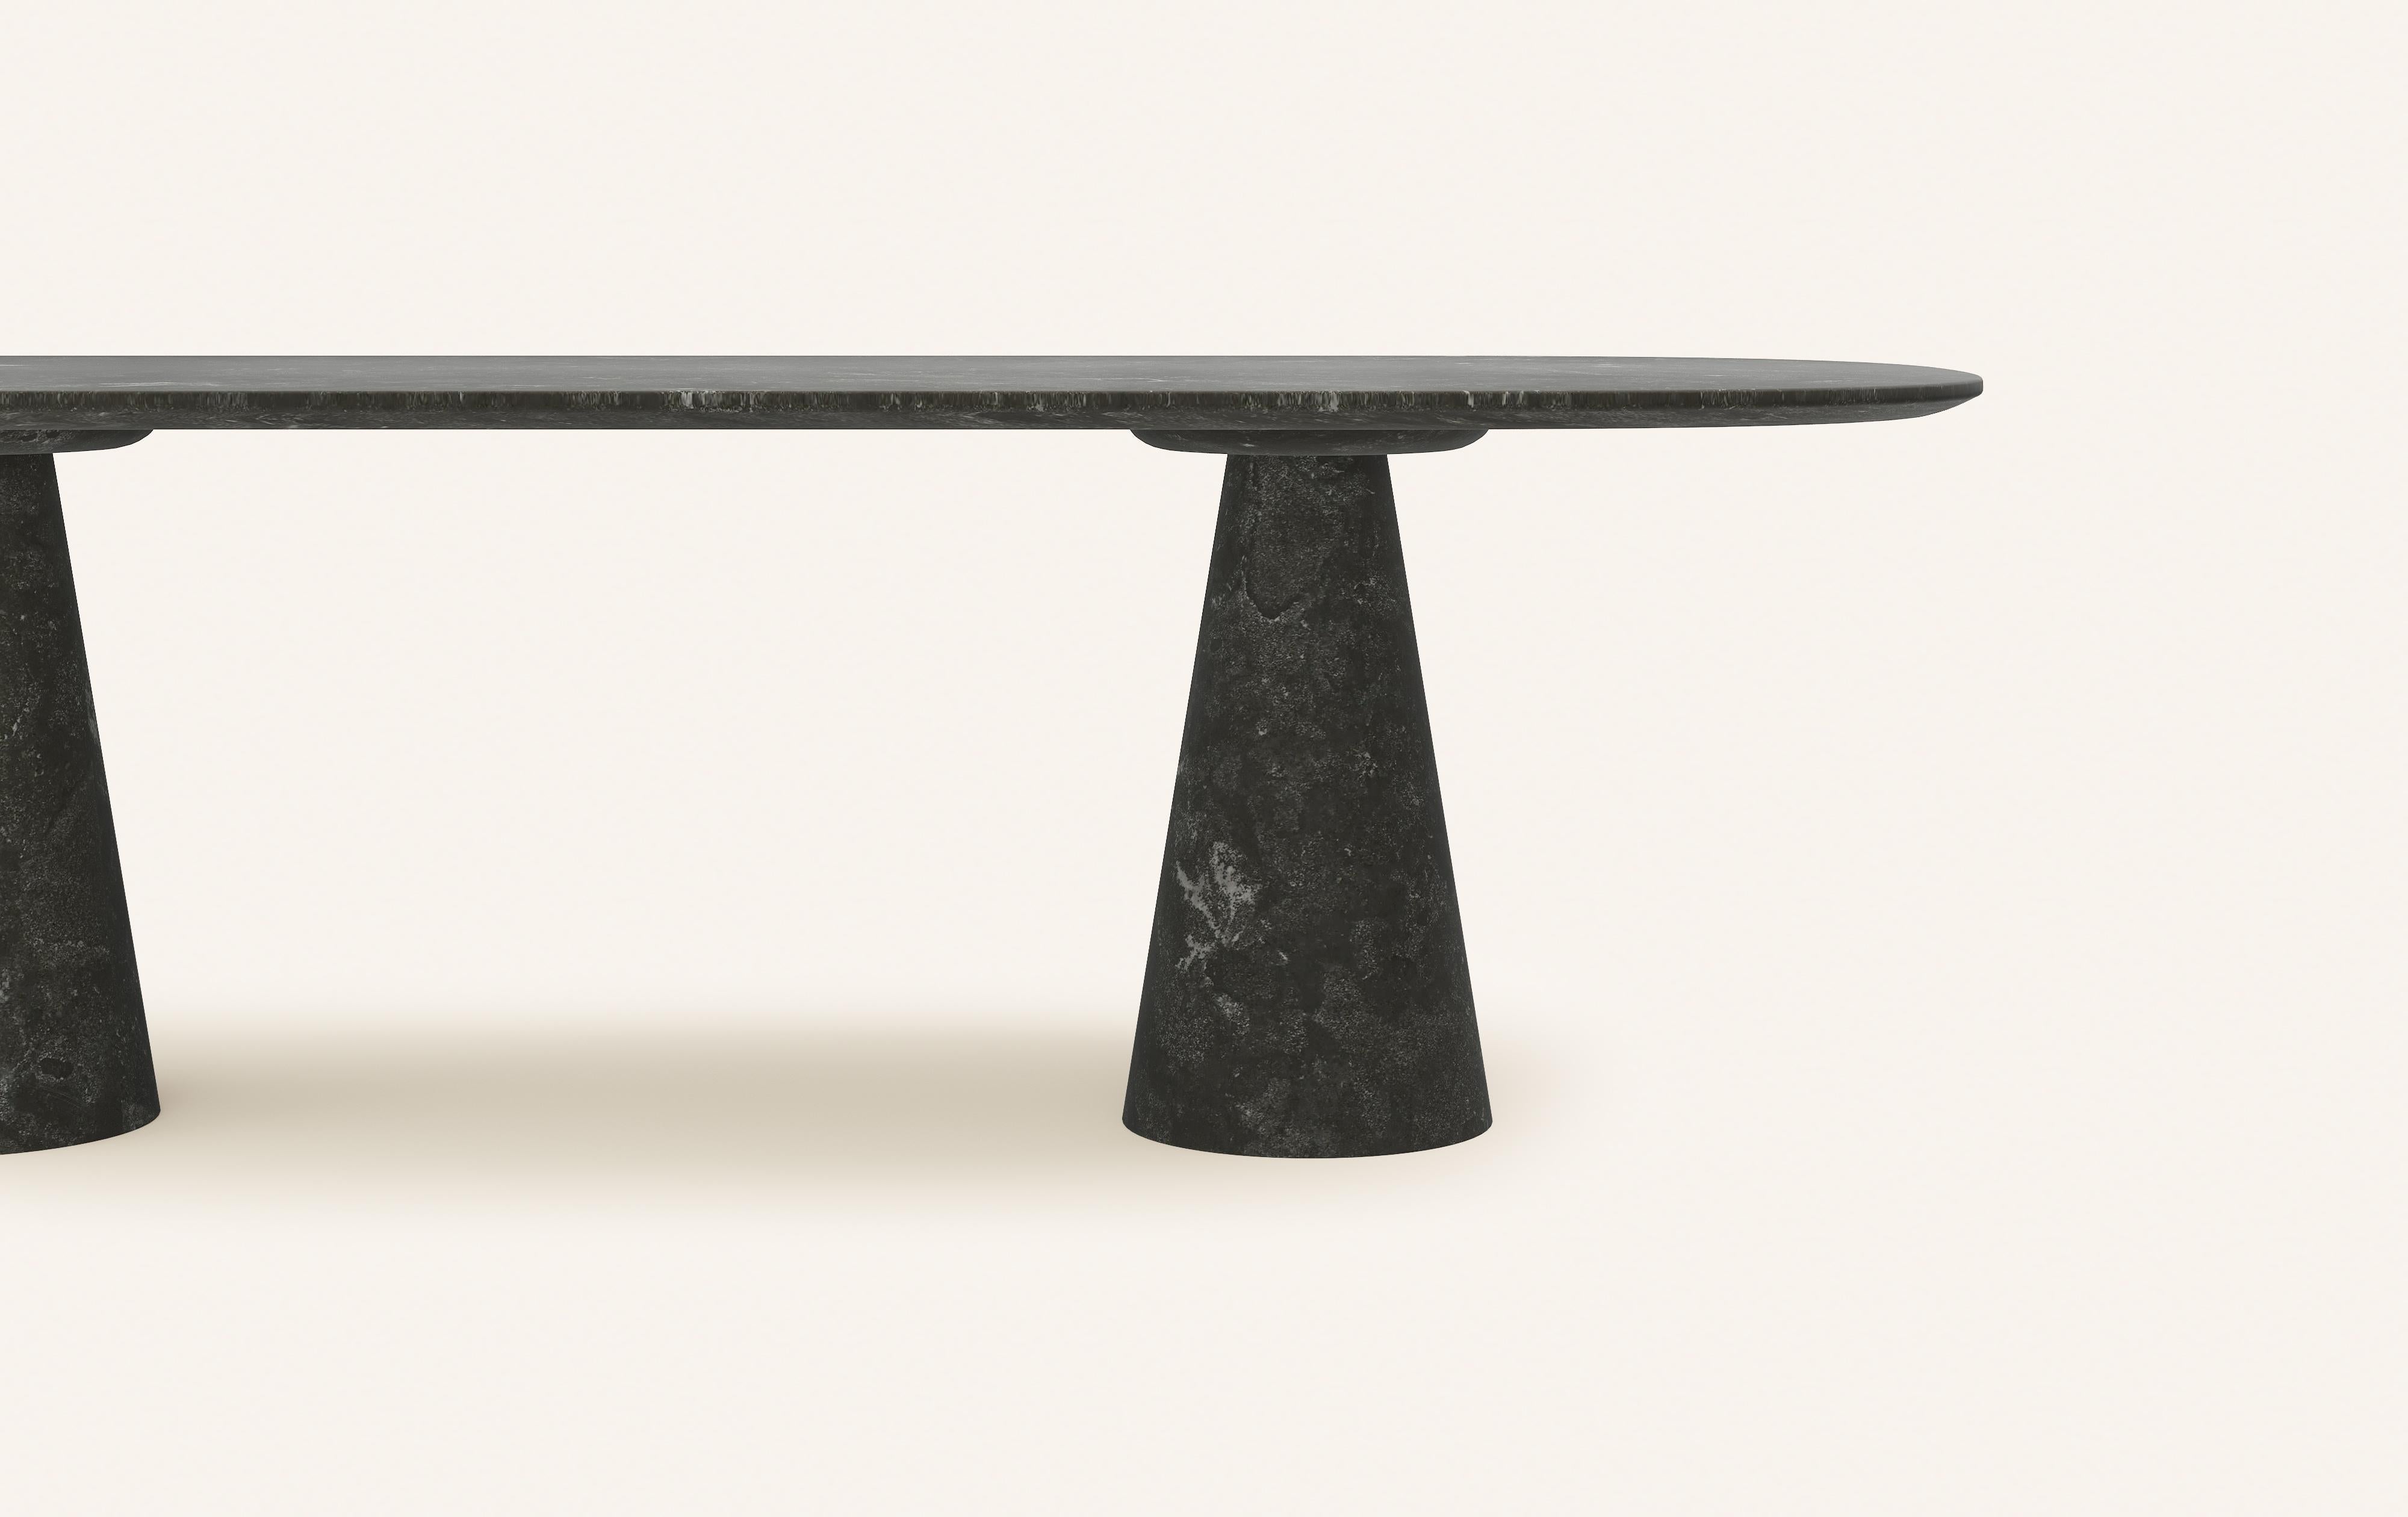 American FORM(LA) Cono Oval Dining Table 108”L x 48”W x 30”H Nero Petite Granite For Sale